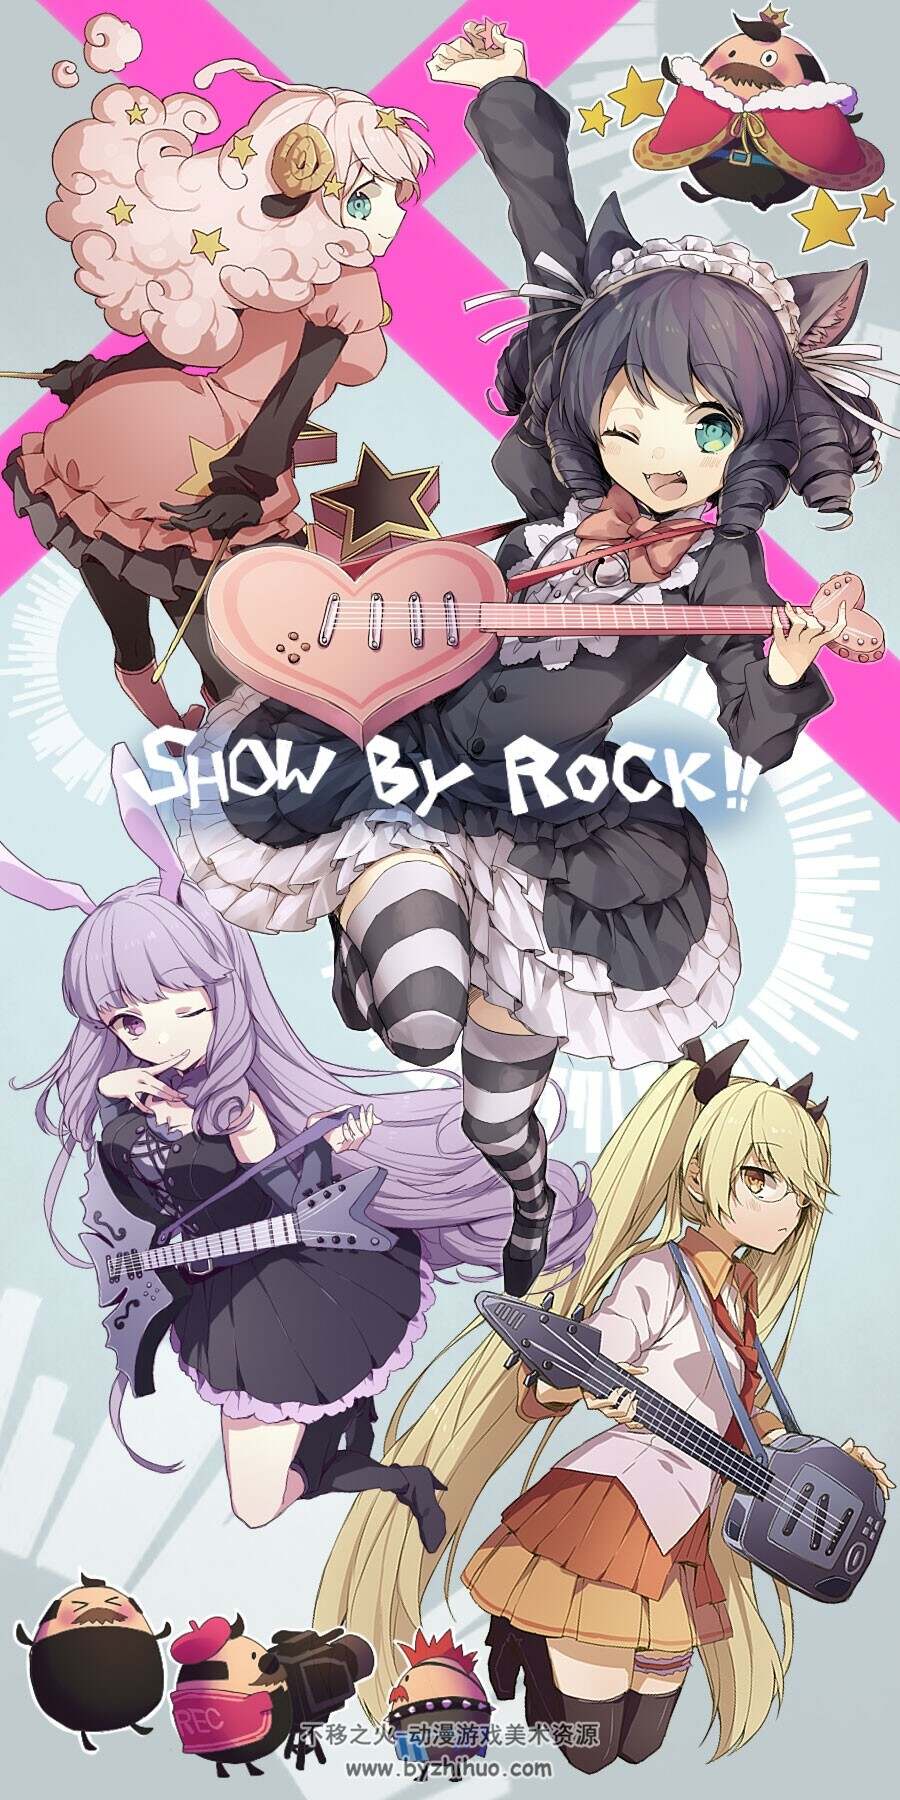 SHOW BY ROCK!! 角色插画壁纸美图 104P